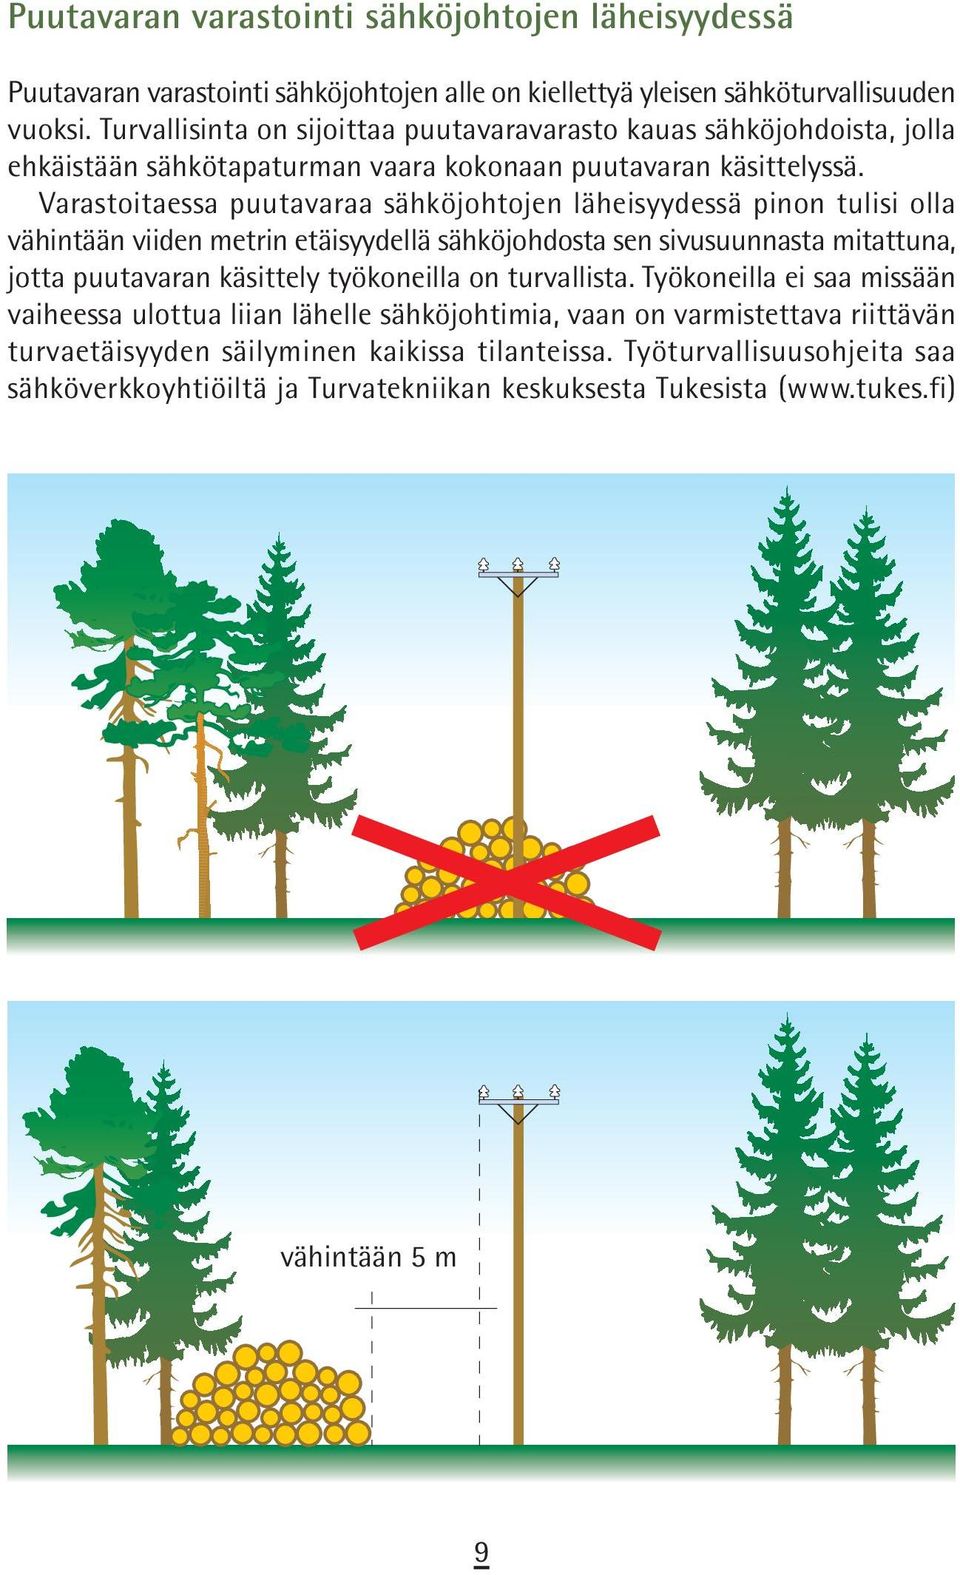 Varastoitaessa puutavaraa sähköjohtojen läheisyydessä pinon tulisi olla vähintään viiden metrin etäisyydellä sähköjohdosta sen sivusuunnasta mitattuna, jotta puutavaran käsittely työkoneilla